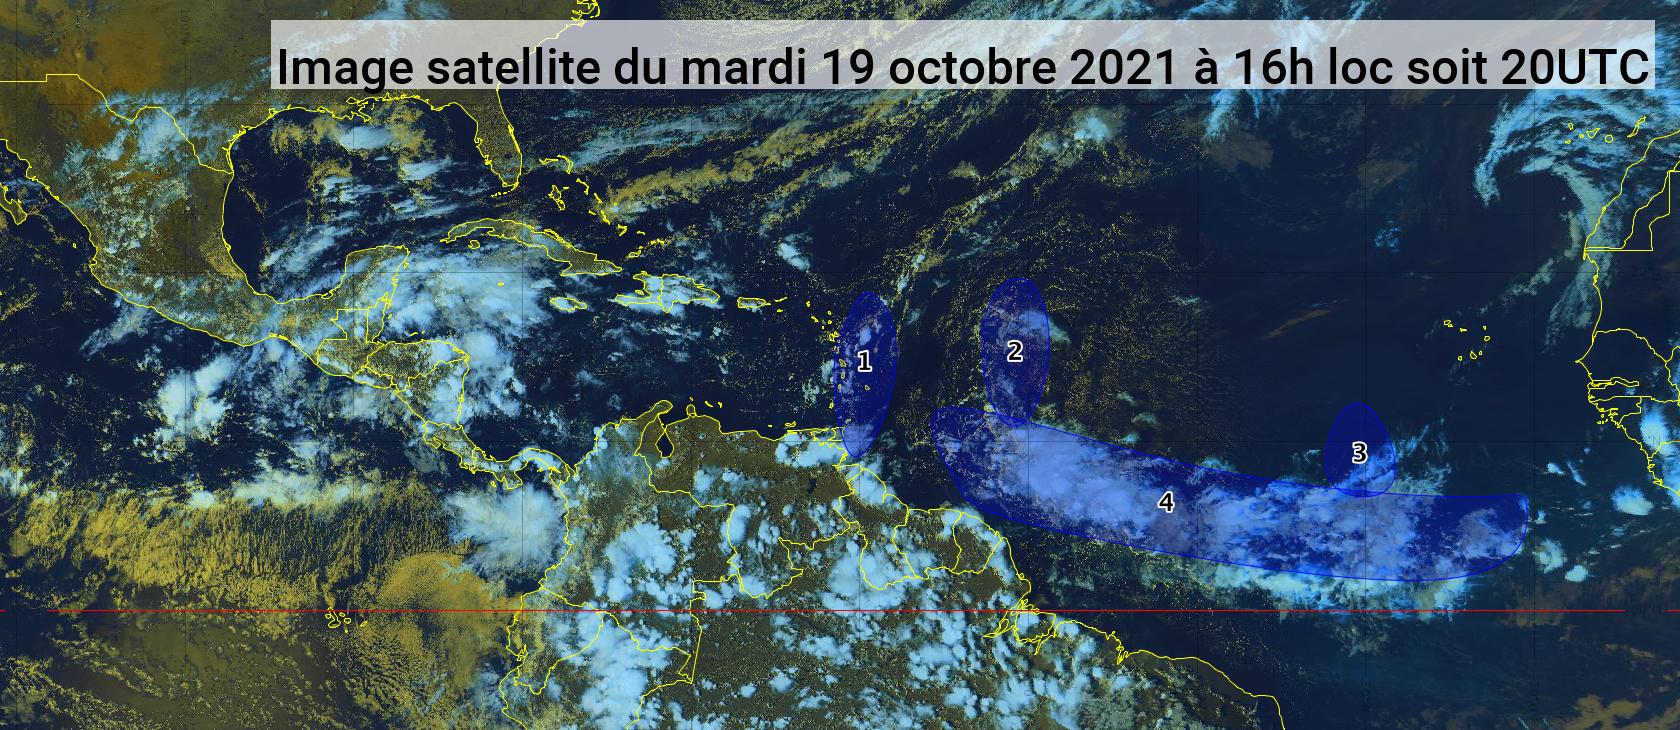     Situation calme, trois ondes tropicales peu actives (bulletin du 19/10/21)

